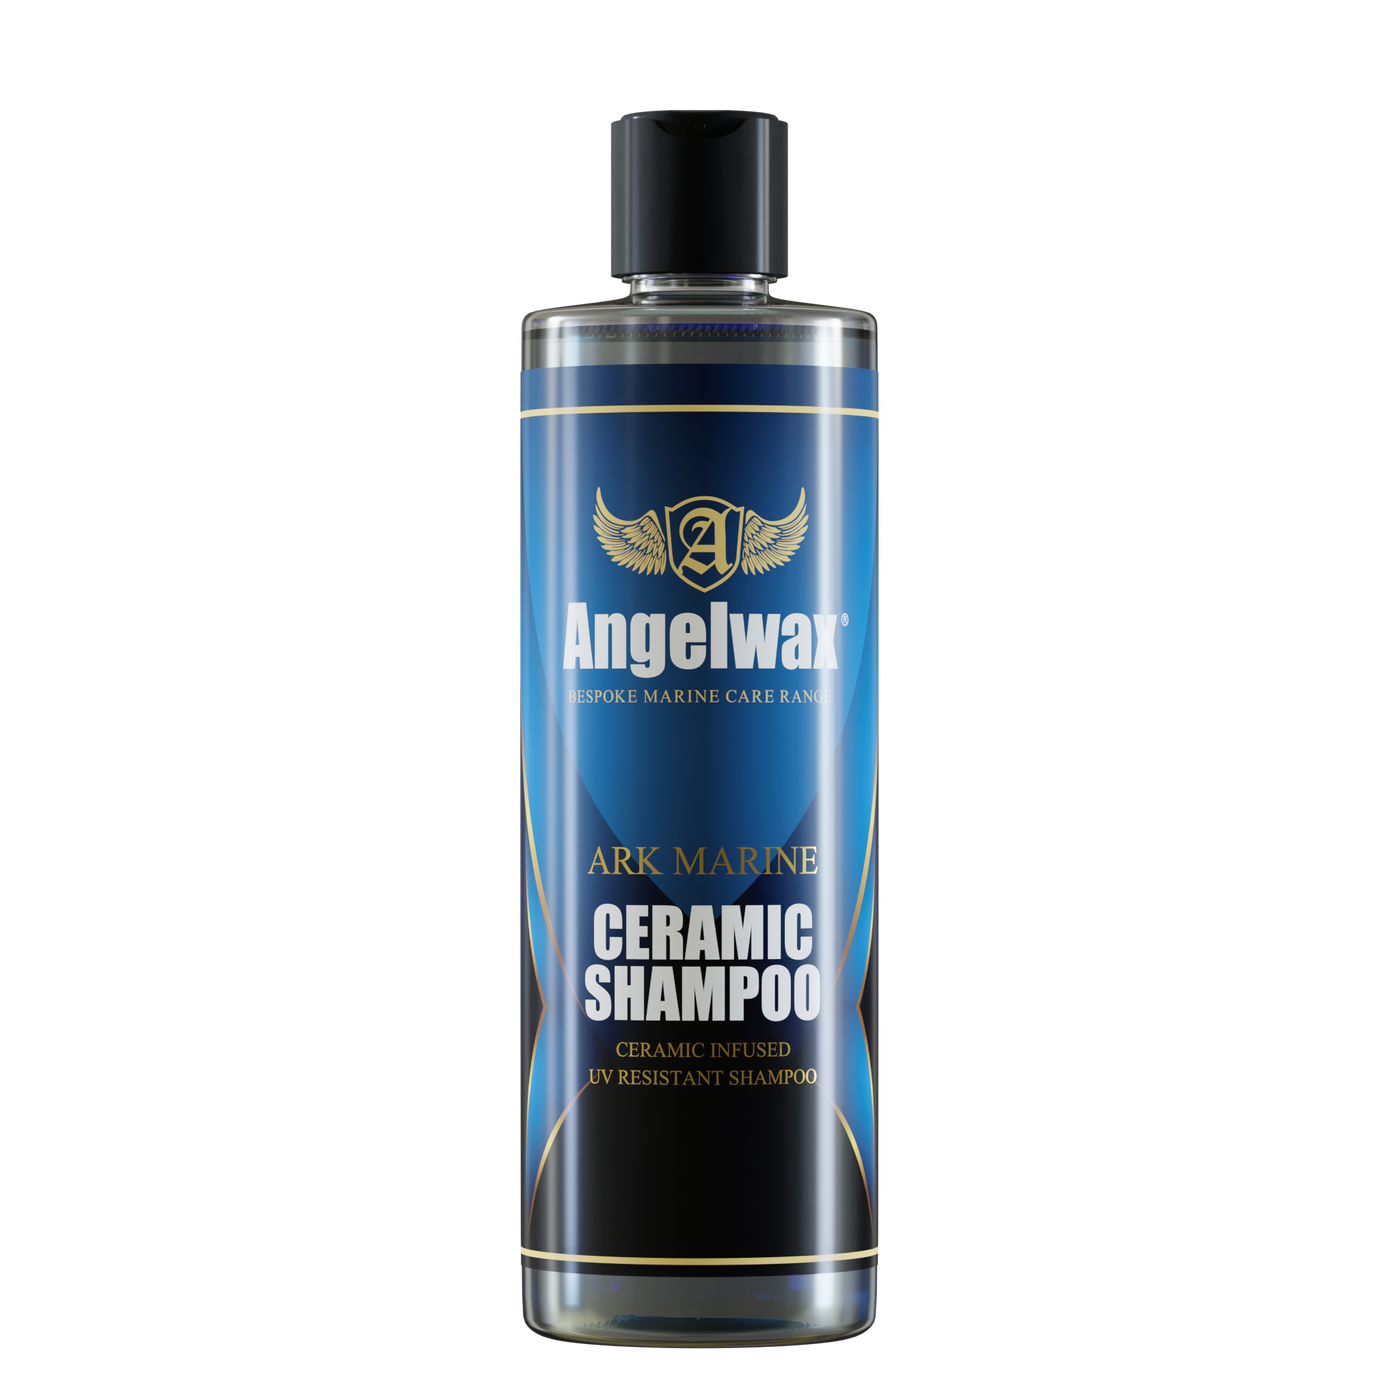 Ark Marine Ceramic Shampoo